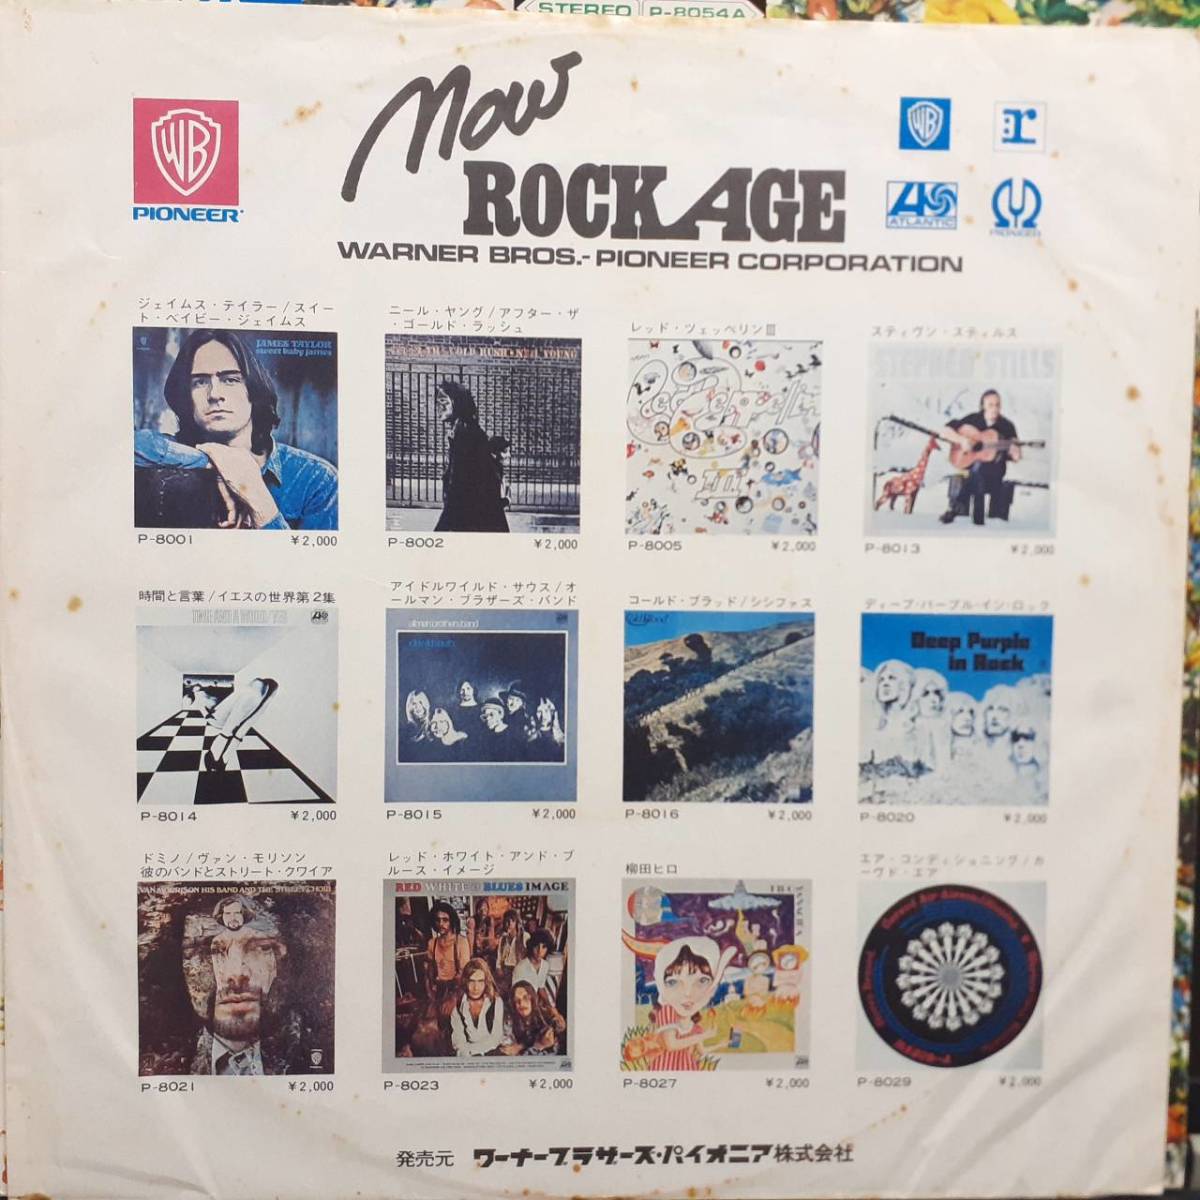  блокировка *eiji цветок obi редкость записано в Японии LP с поясом оби Buffalo Springfield / Again 1971 год ATLANTIC P-8054A Rock Age OBI Neil Young, Stephen Stills